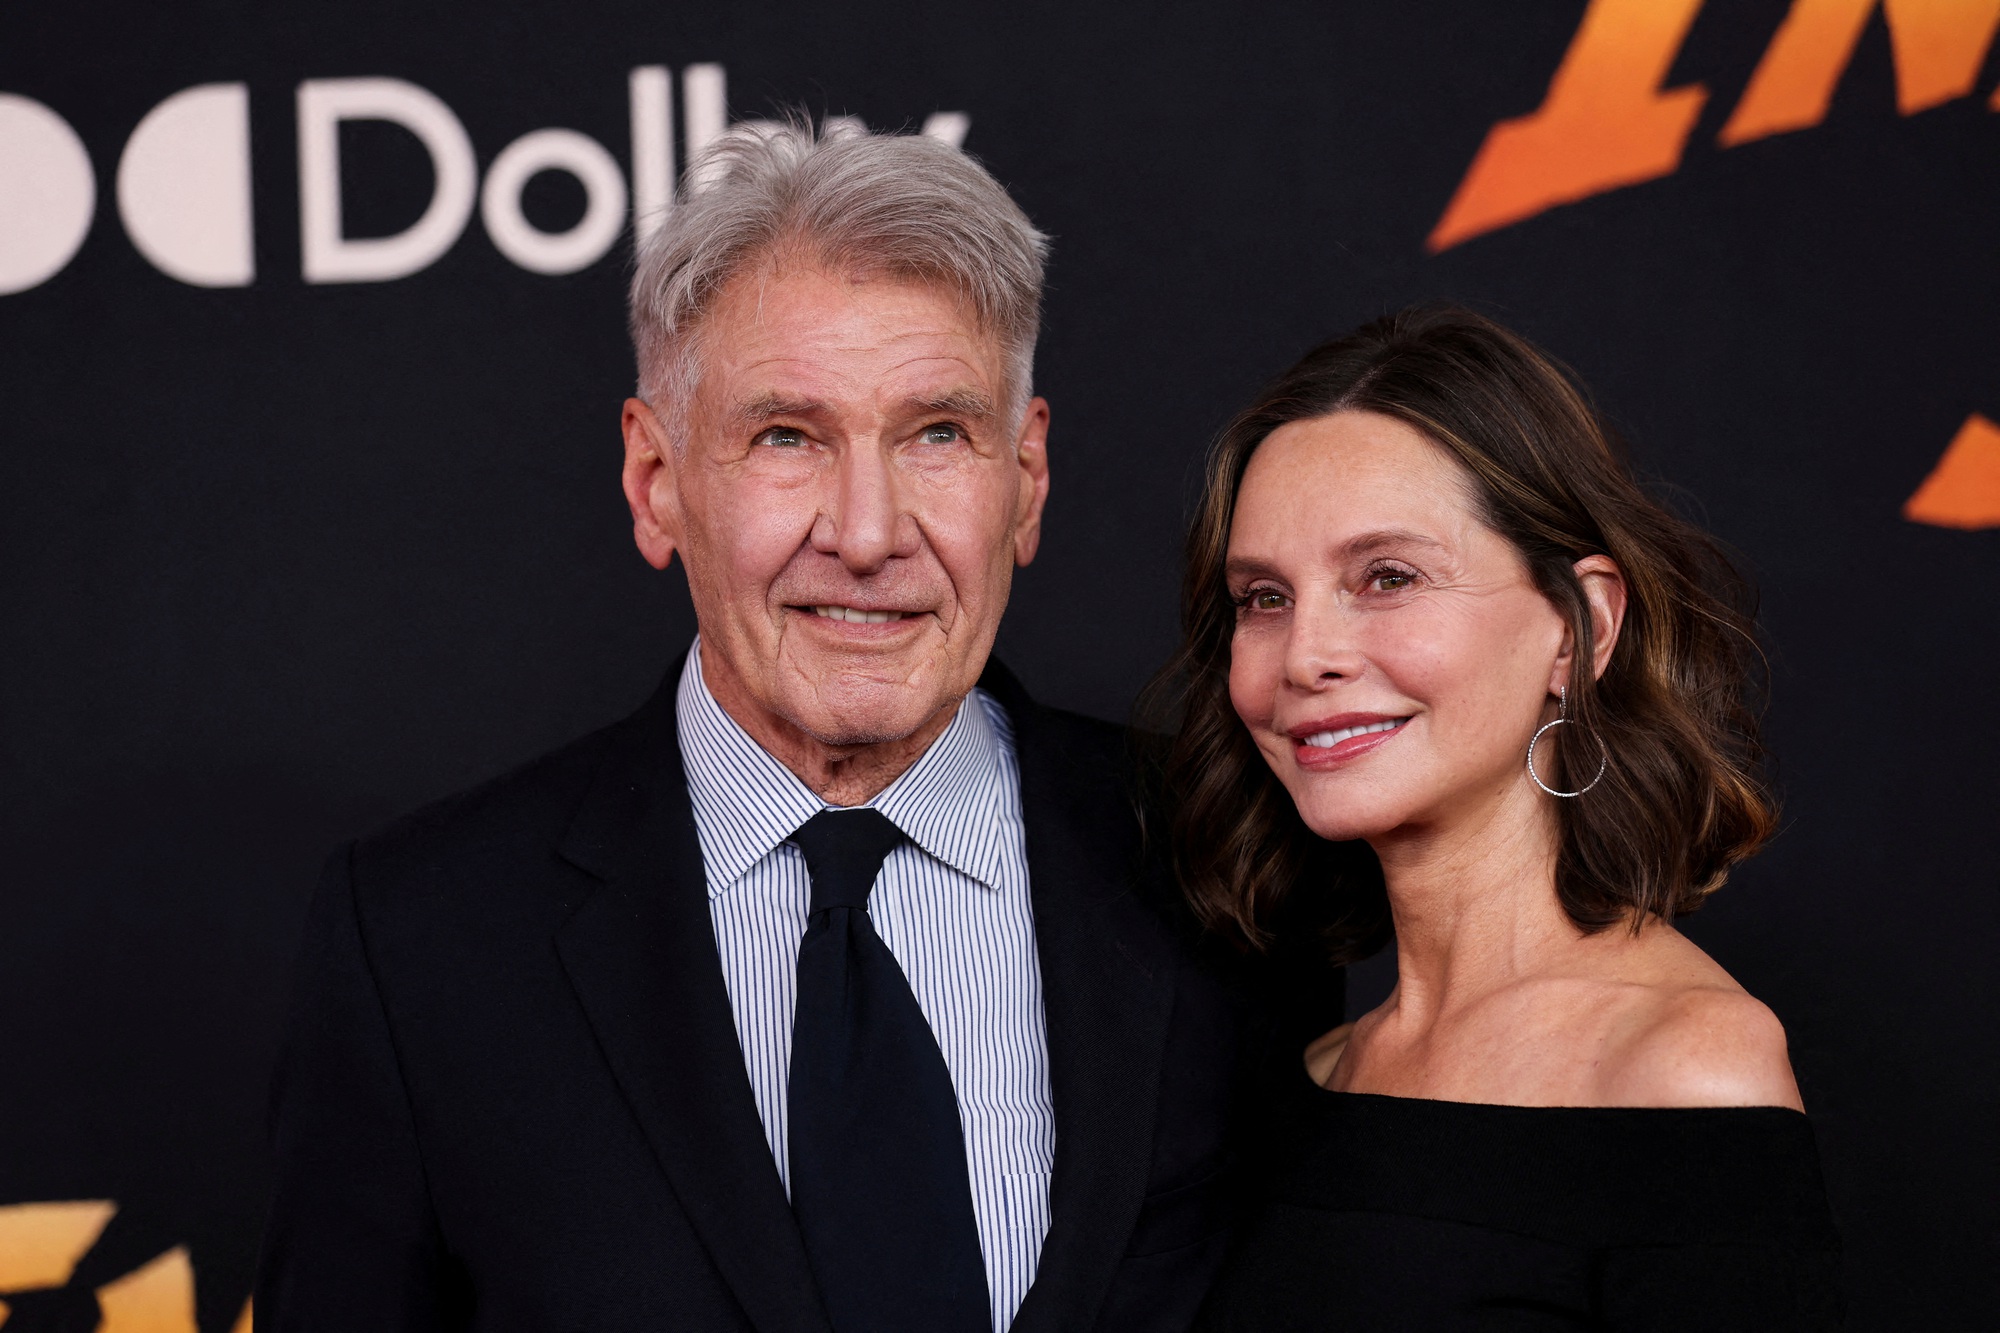 Ở tuổi 80, Harrison Ford vẫn sánh đôi cùng vợ trên thảm đỏ - Ảnh 6.